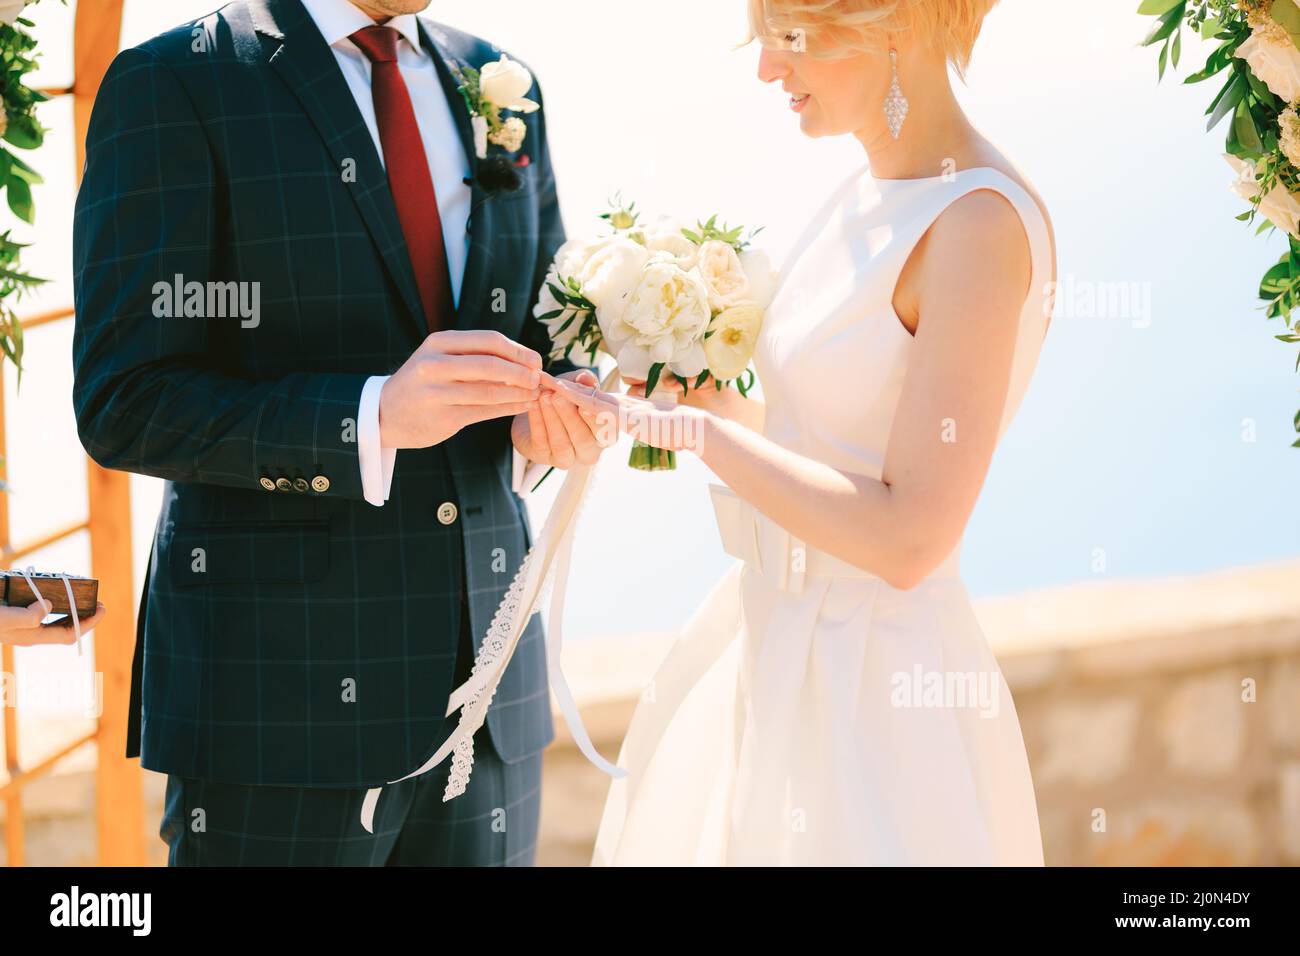 Sposi in un vestito nero plaid mette un anello di nozze sul dito per sposare in un abito bianco con un bouquet di fiori Foto Stock